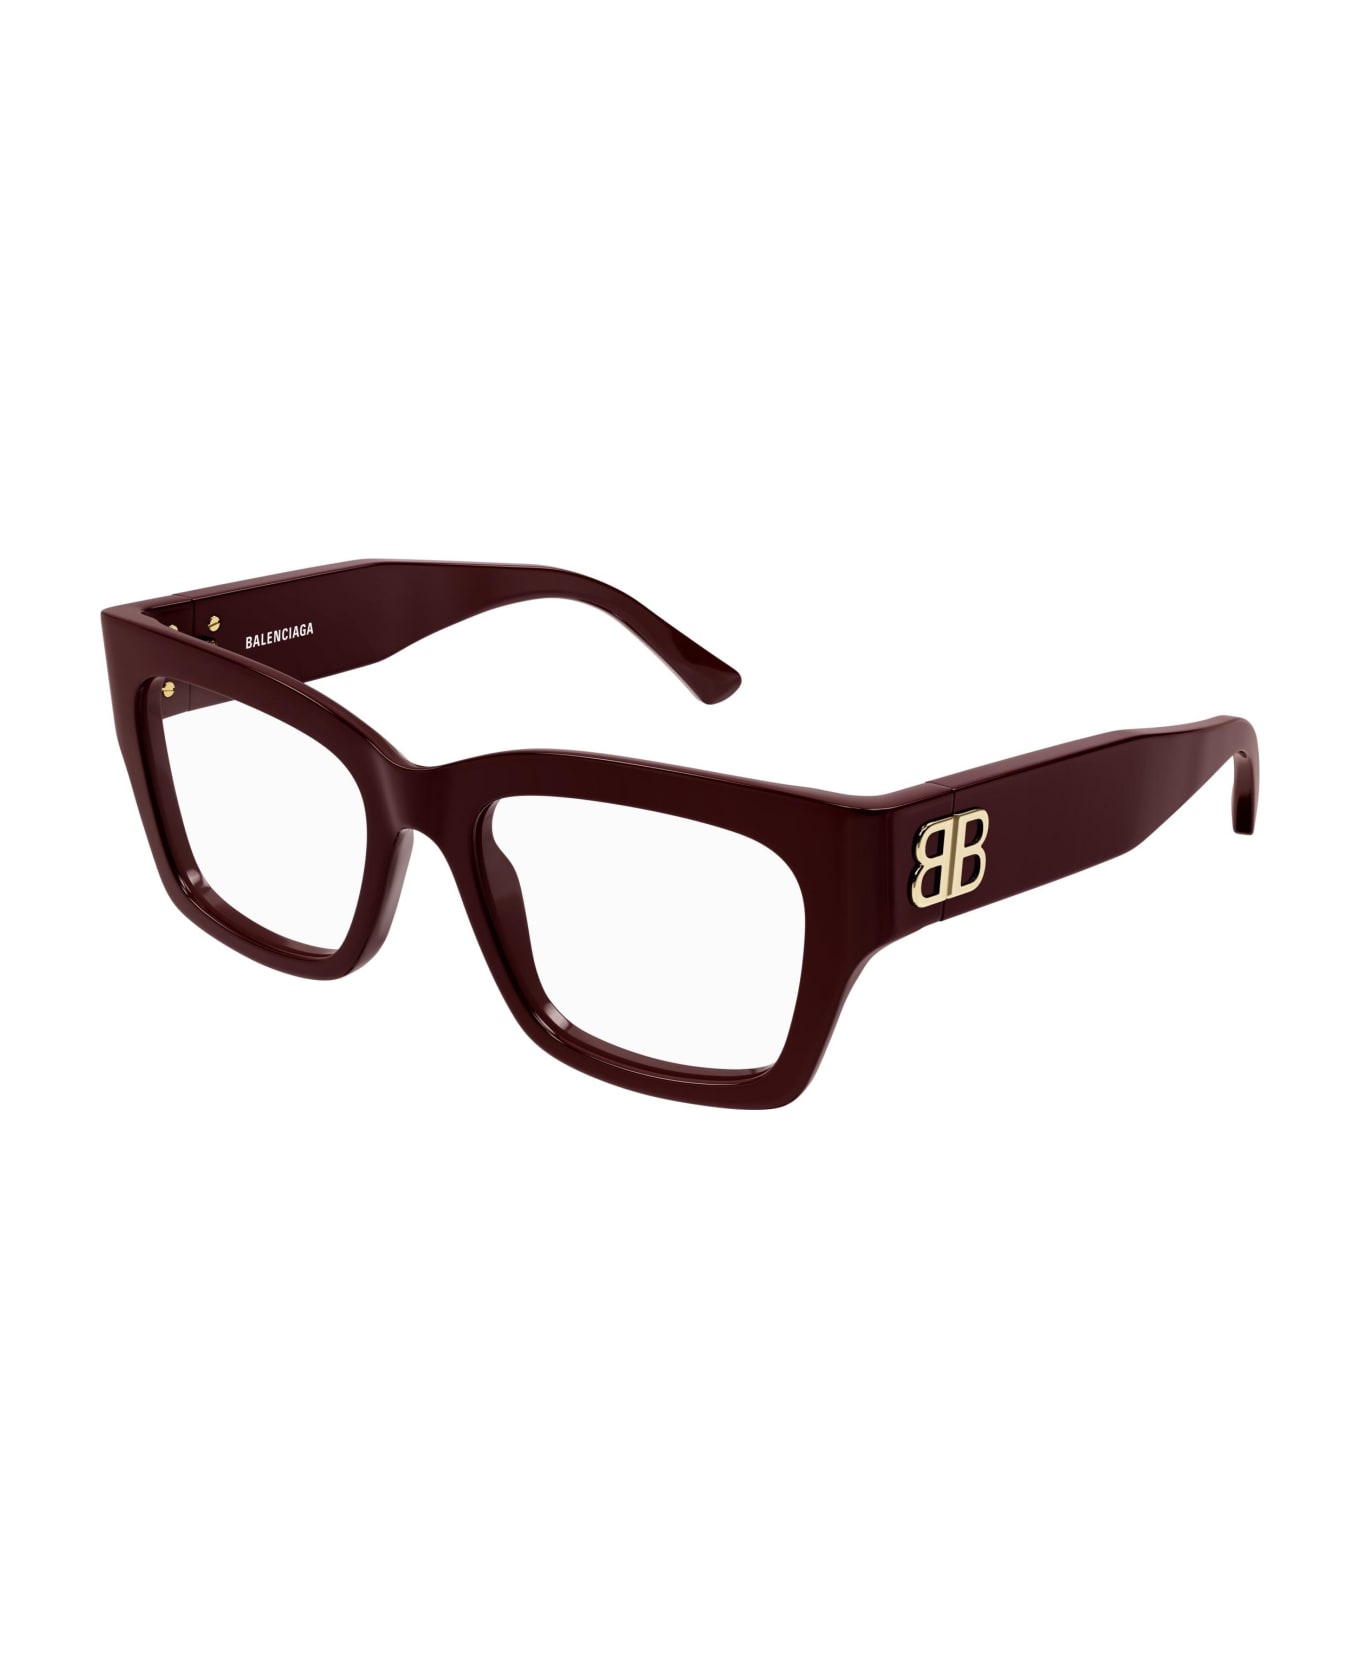 Balenciaga Eyewear Glasses - Burgundy